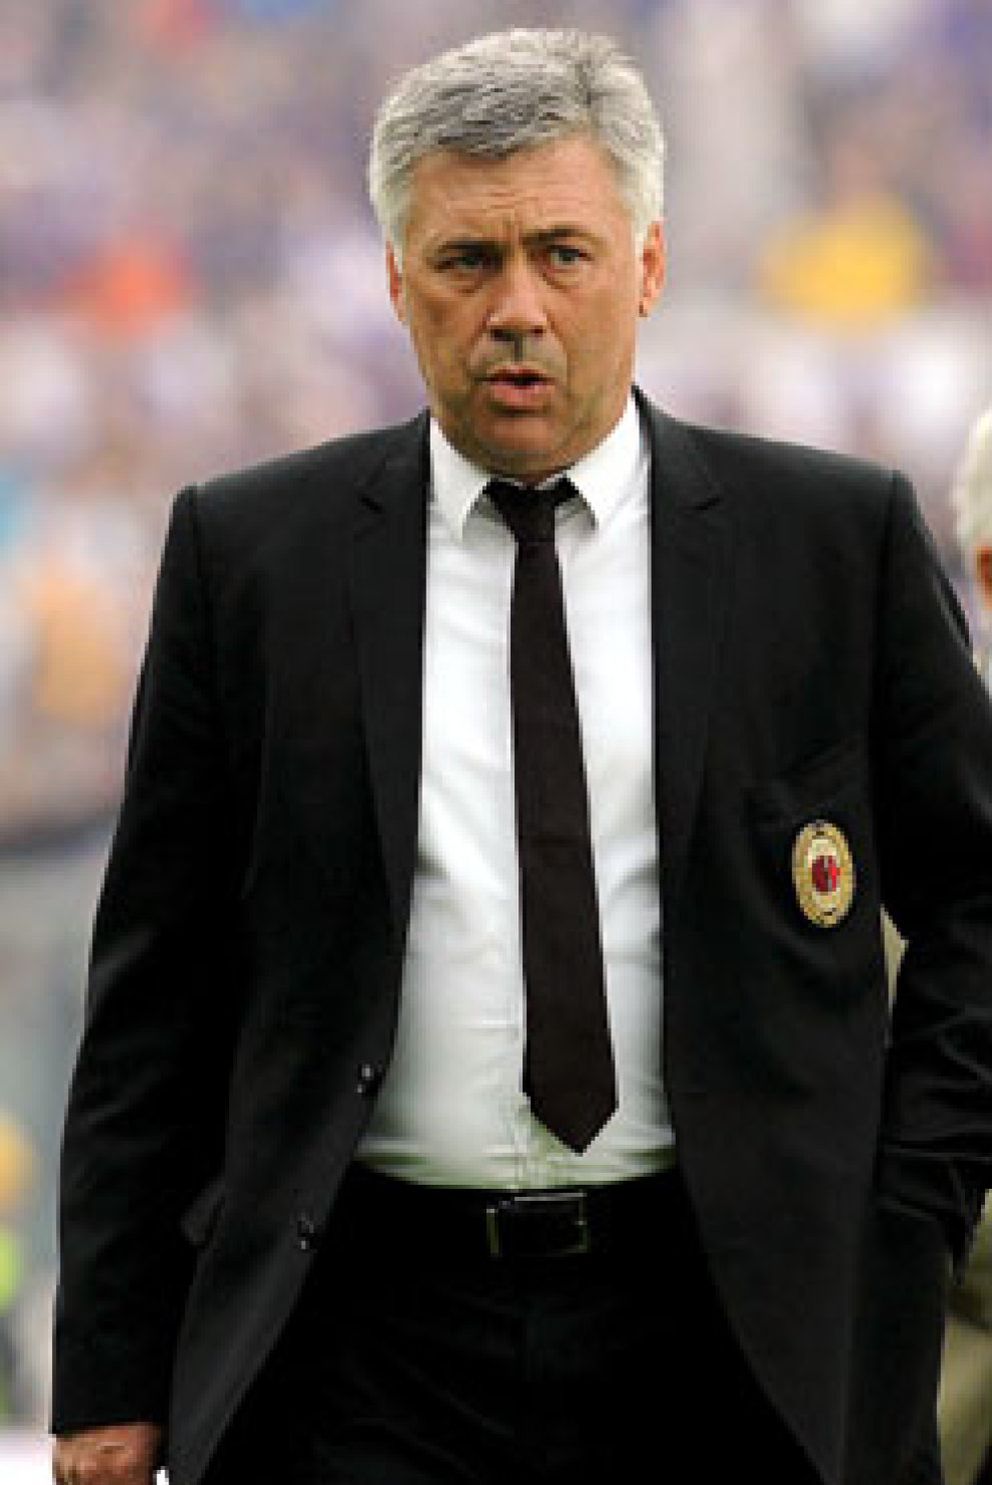 Foto: El Chelsea confirma el nombramiento de Carlo Ancelotti como nuevo entrenador